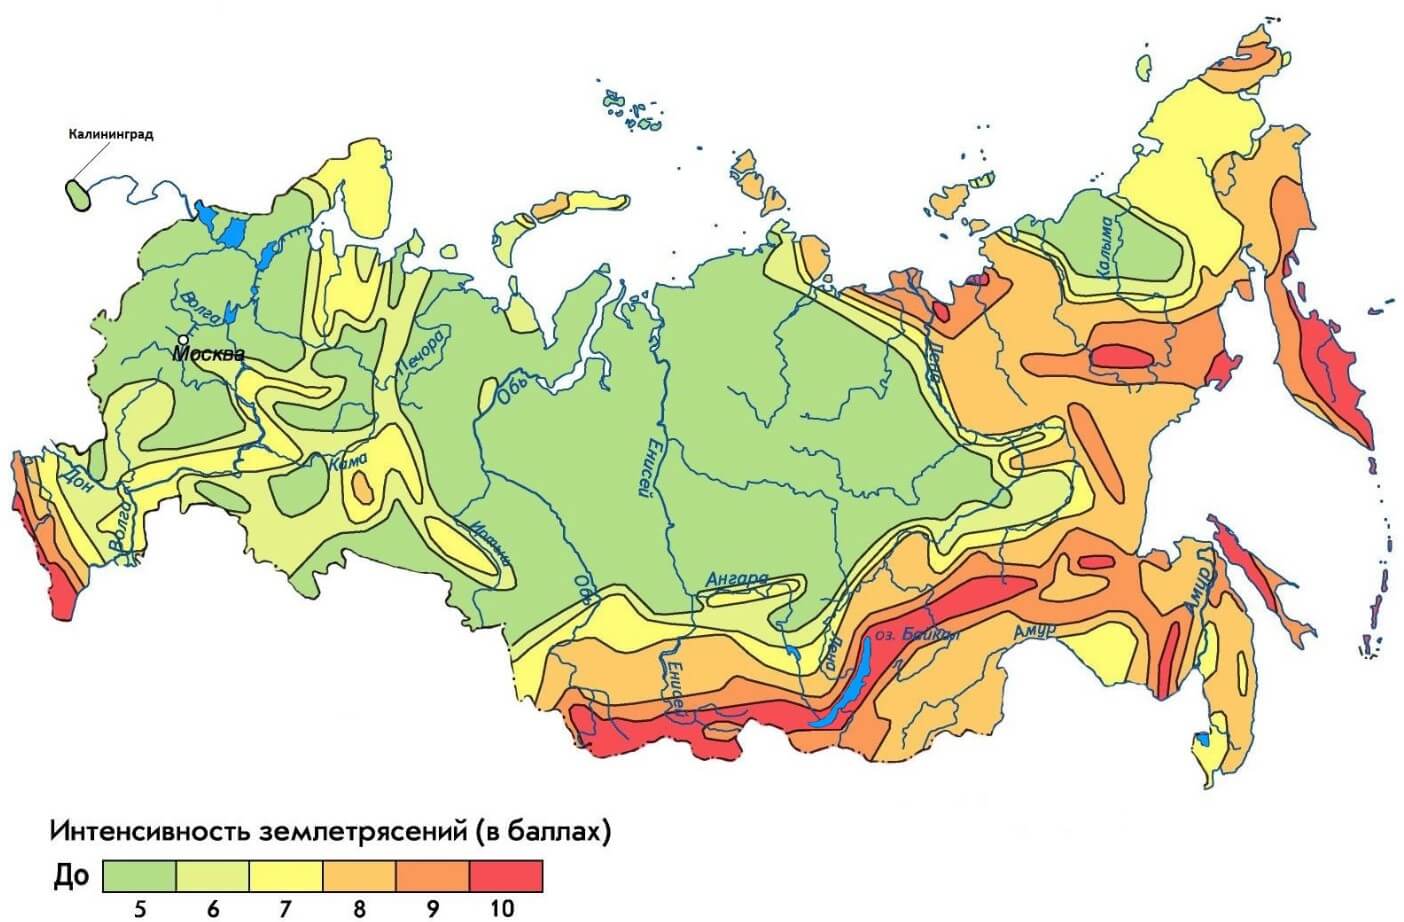 Землетрясения в России — где они происходят чаще? Карта сейсмической активности России. Зеленый цвет означает малую активность, а красная — высокую. Фото.